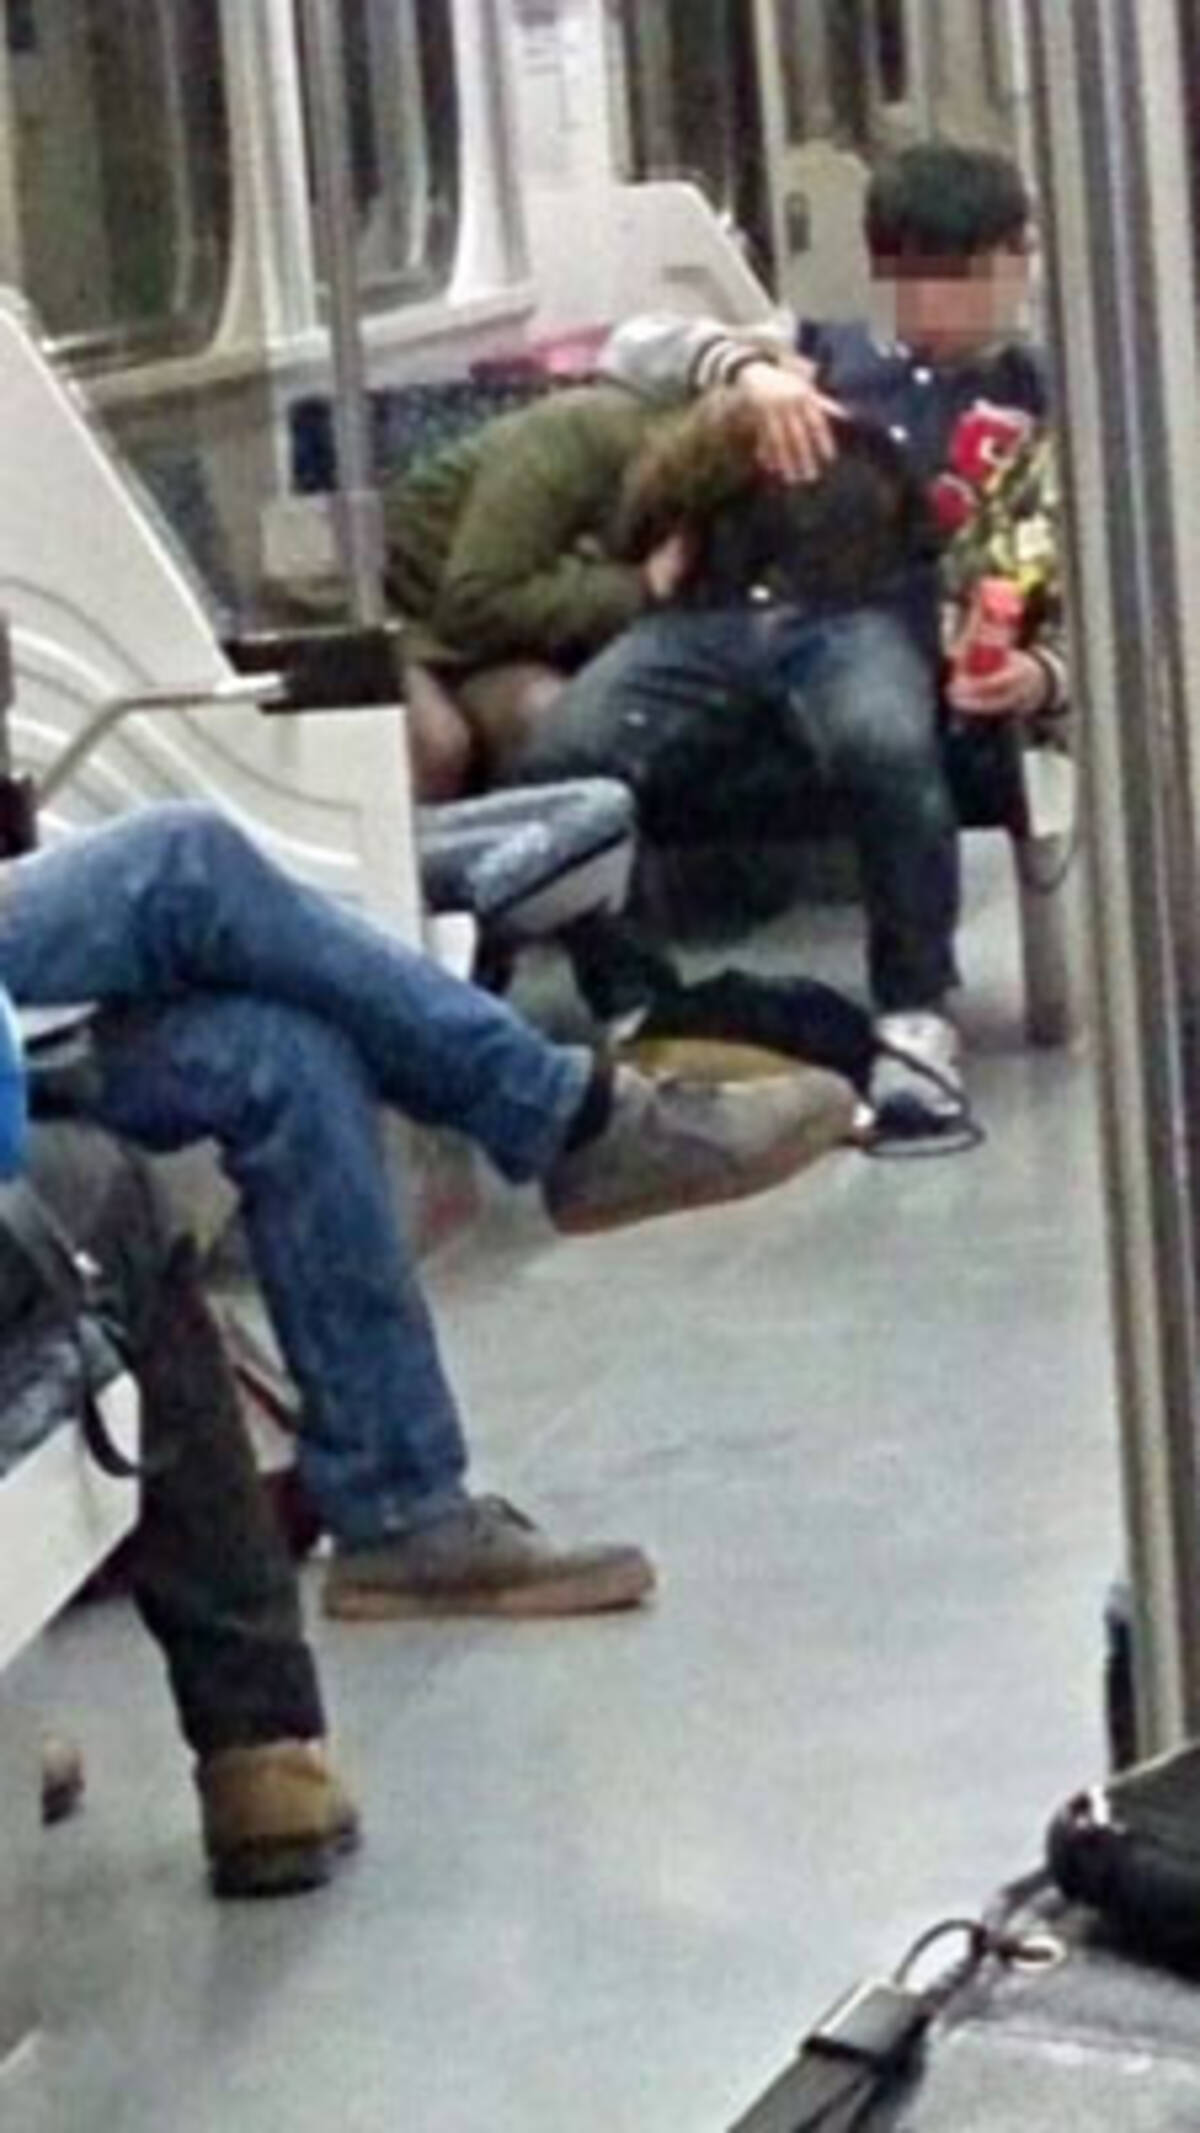 日本製AVの影響か!? 台湾・電車内でのフェラ画像流出事件が続発中「男性同士のしゃぶり合いも……」 (2015年8月11日) - エキサイトニュース